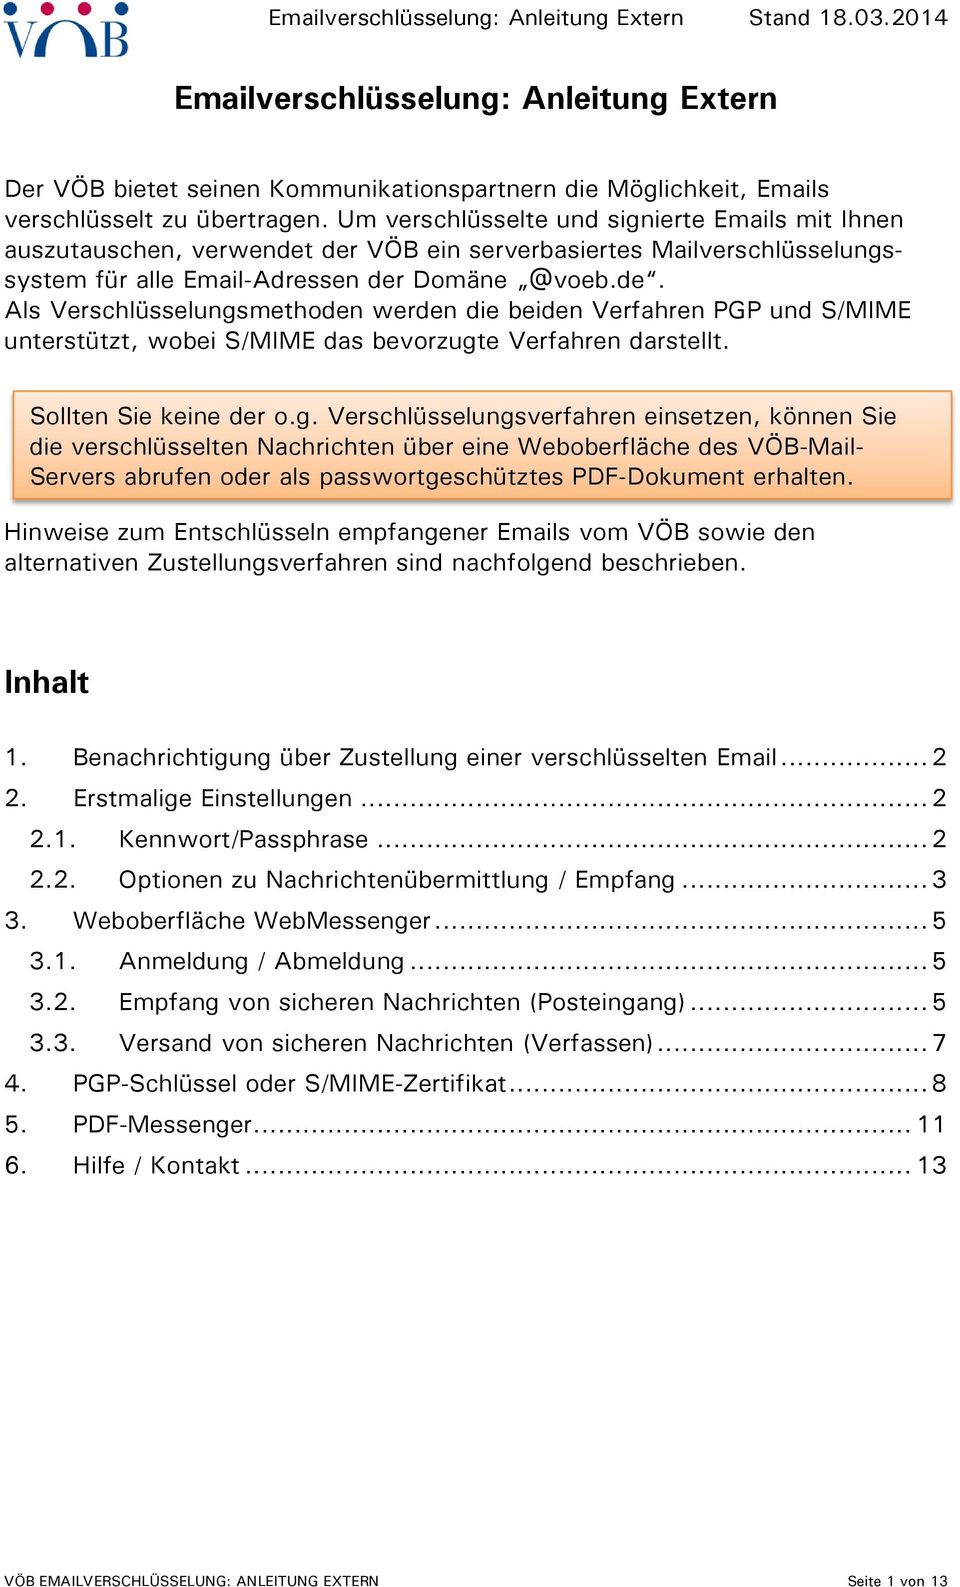 der VÖB ein serverbasiertes Mailverschlüsselungssystem für alle Email-Adressen der Domäne @voeb.de. Als Verschlüsselungsmethoden werden die beiden Verfahren PGP und S/MIME unterstützt, wobei S/MIME das bevorzugte Verfahren darstellt.